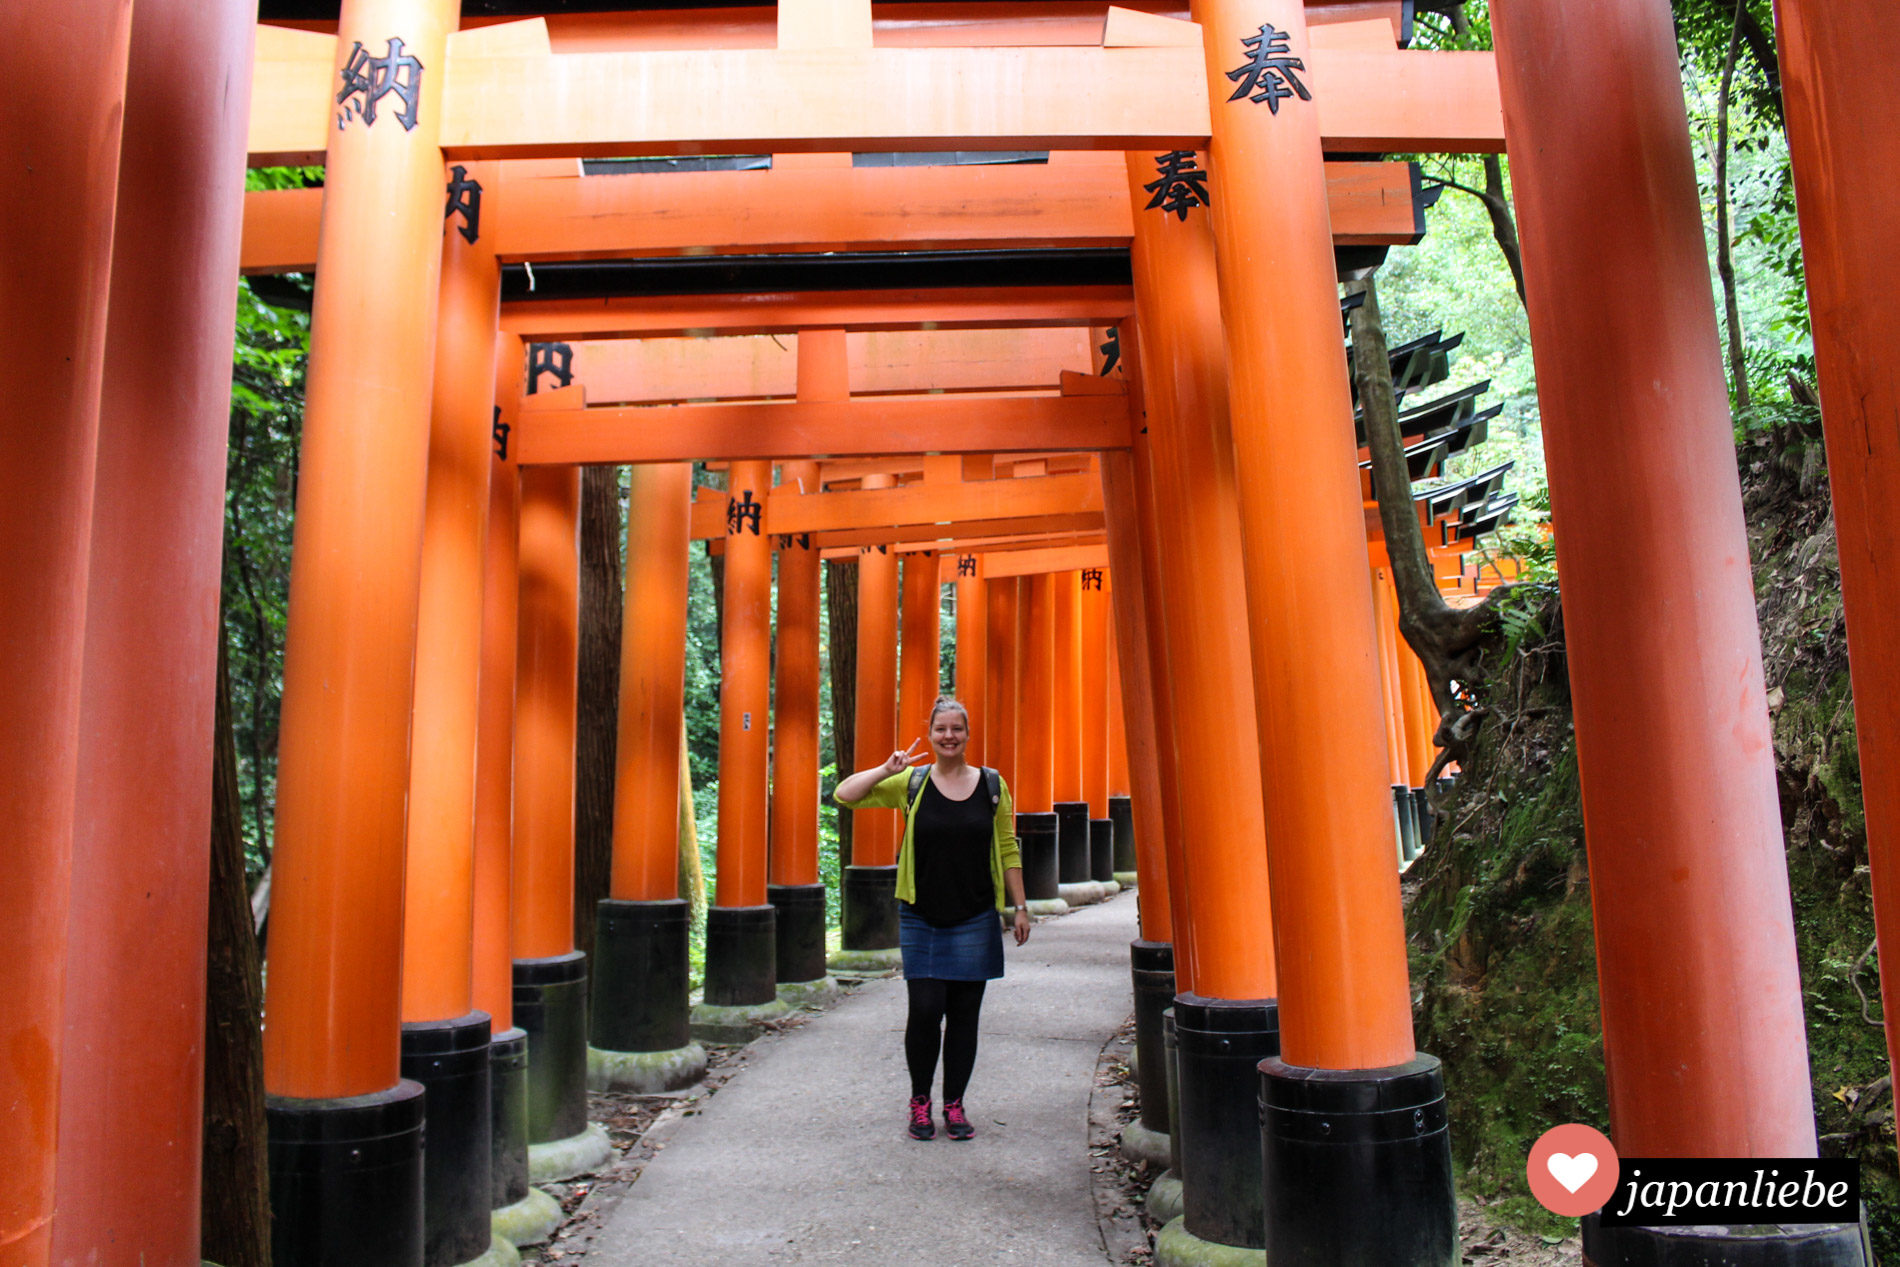 Schnappschuss von mir unter den Toren des Fushimi Inari Schreins in Kyōto.